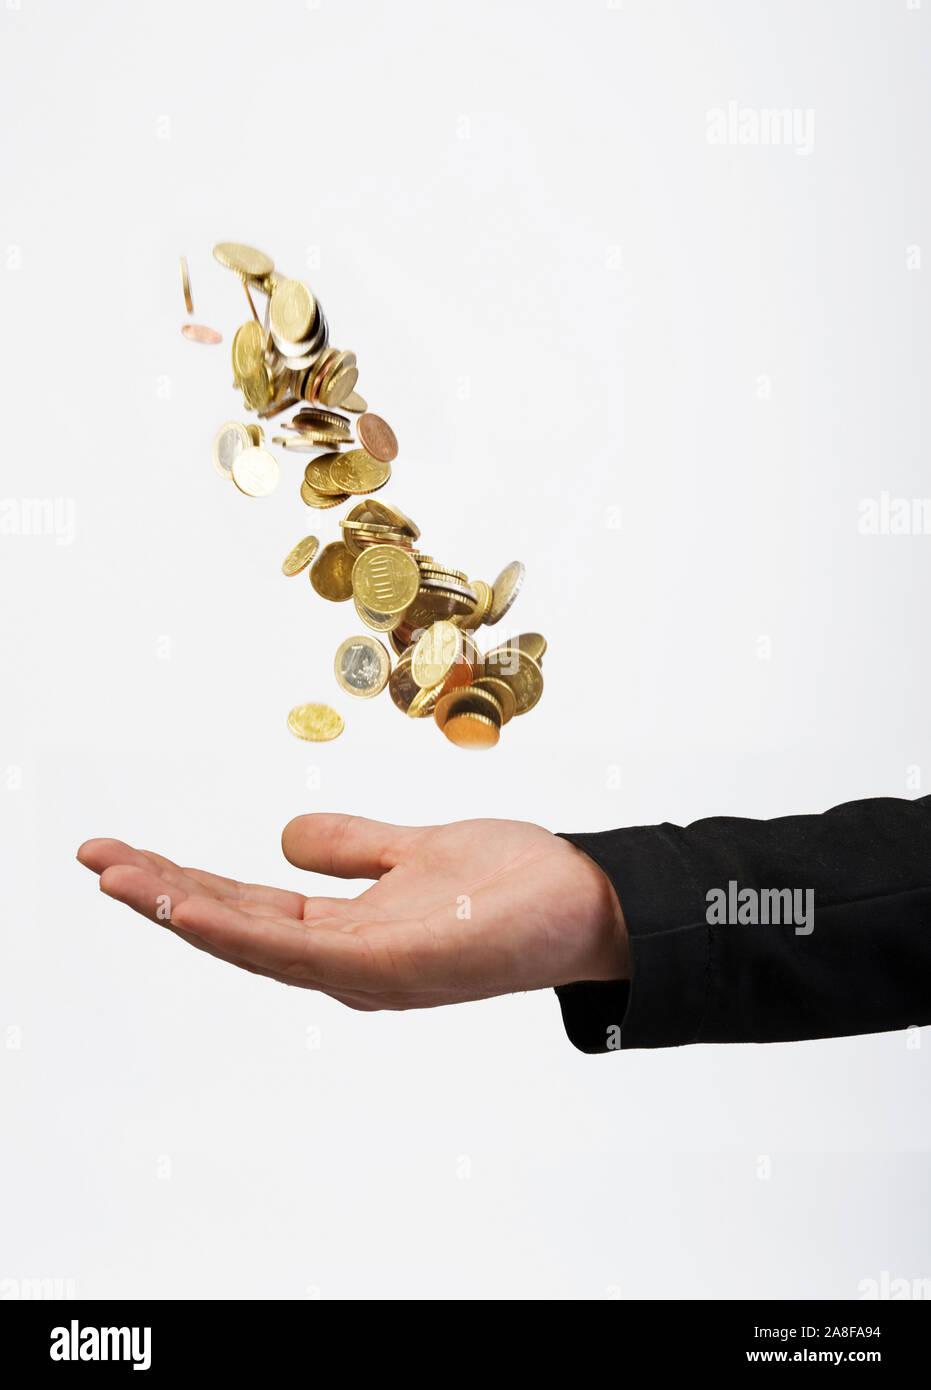 Mann wirft Geldmünzen in die Luft, fängt dise dann auf. Vermögensberater, Finanzjongleur, MR:Yes Stock Photo